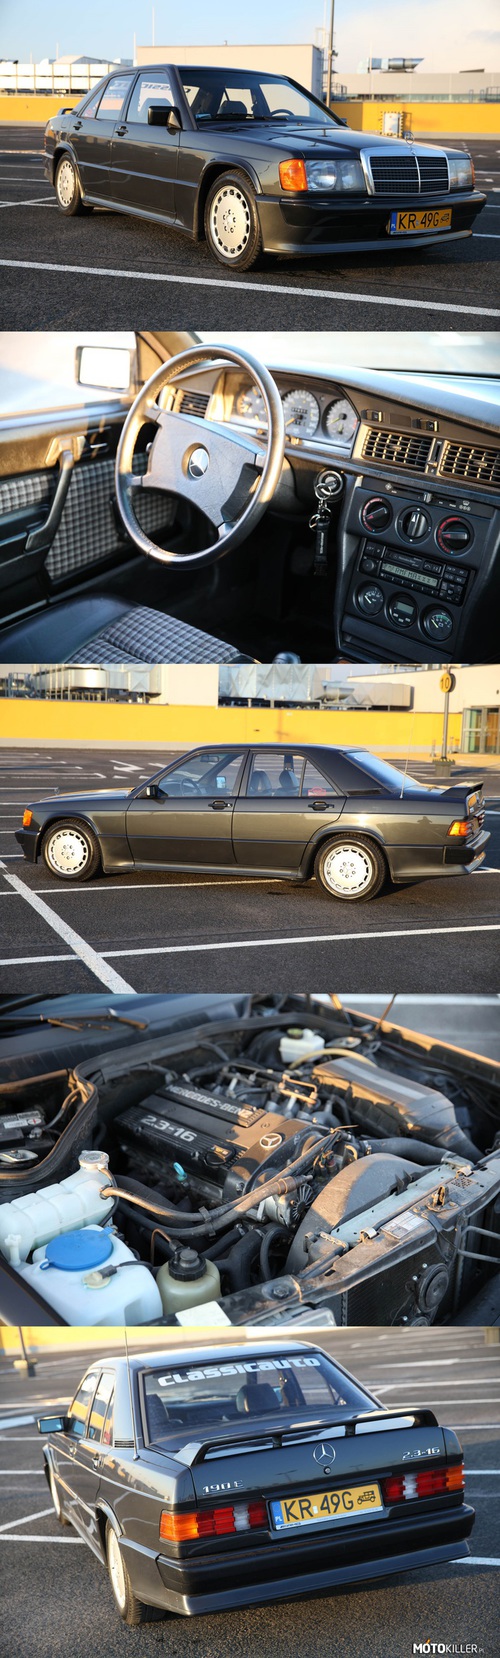 Mercedes 190E Cosworth 1984